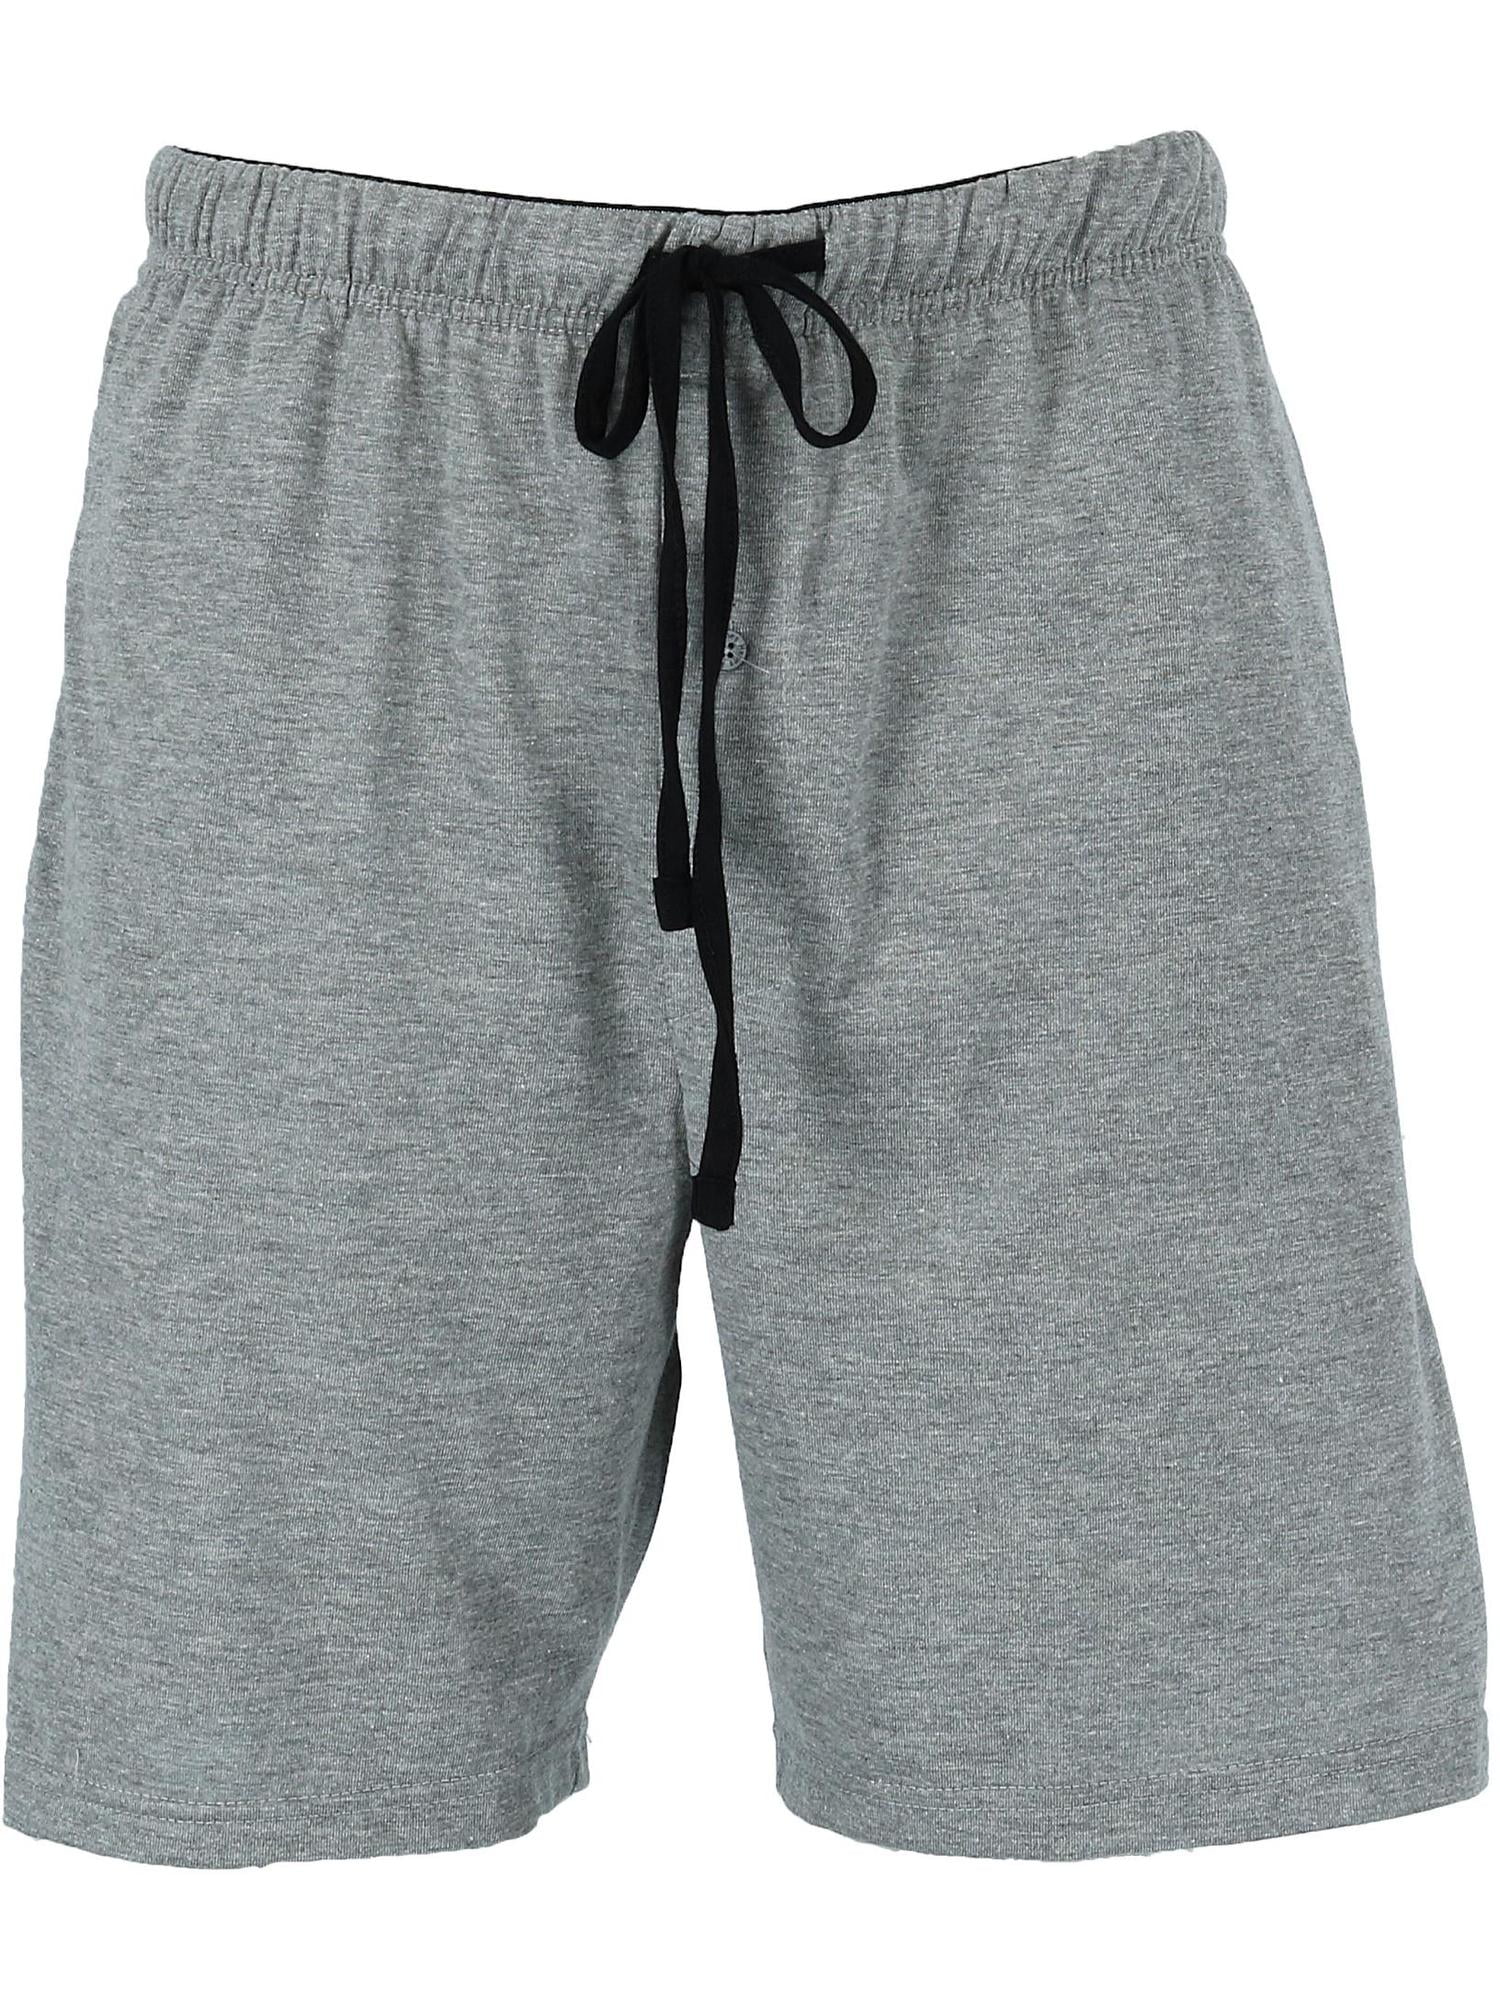 Hanes - Hanes Knit Sleep Shorts with Pockets (3 Pair Pack) (Men's Big ...